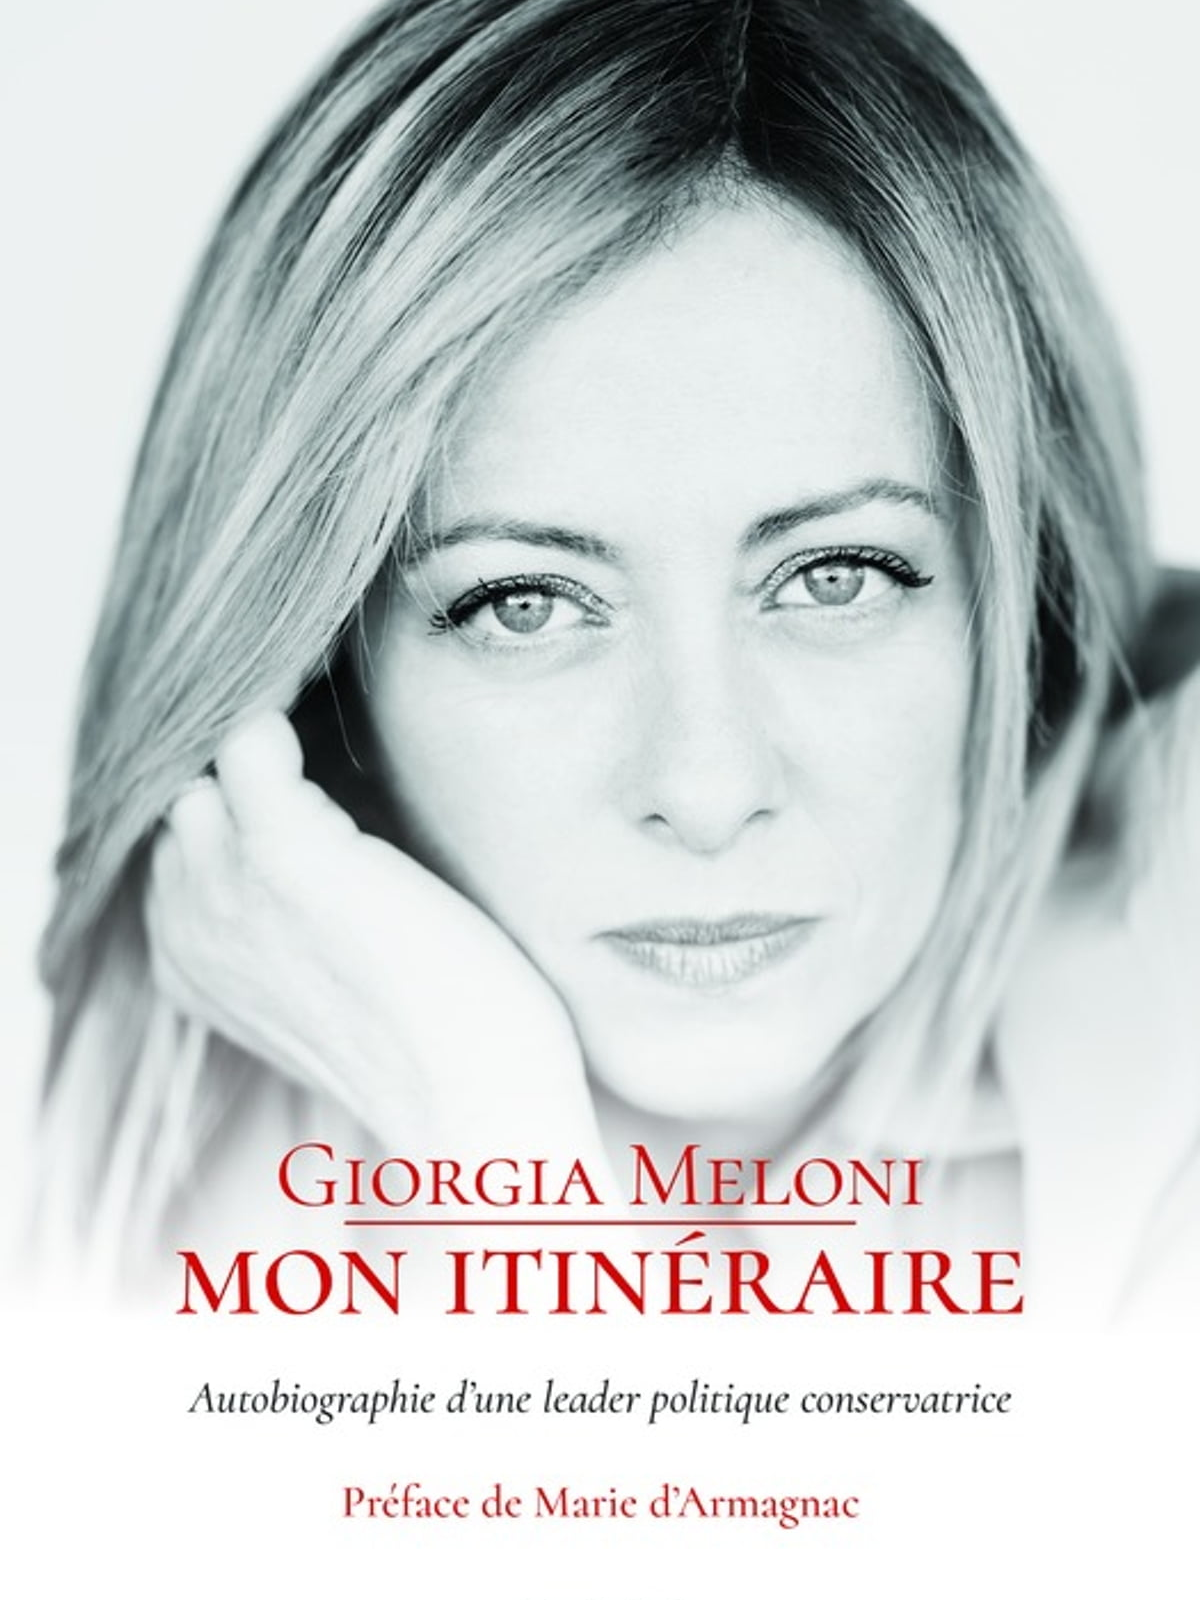 Giorgia Meloni Mon itinéraire - Autobiographie d'une leader politique conservatrice